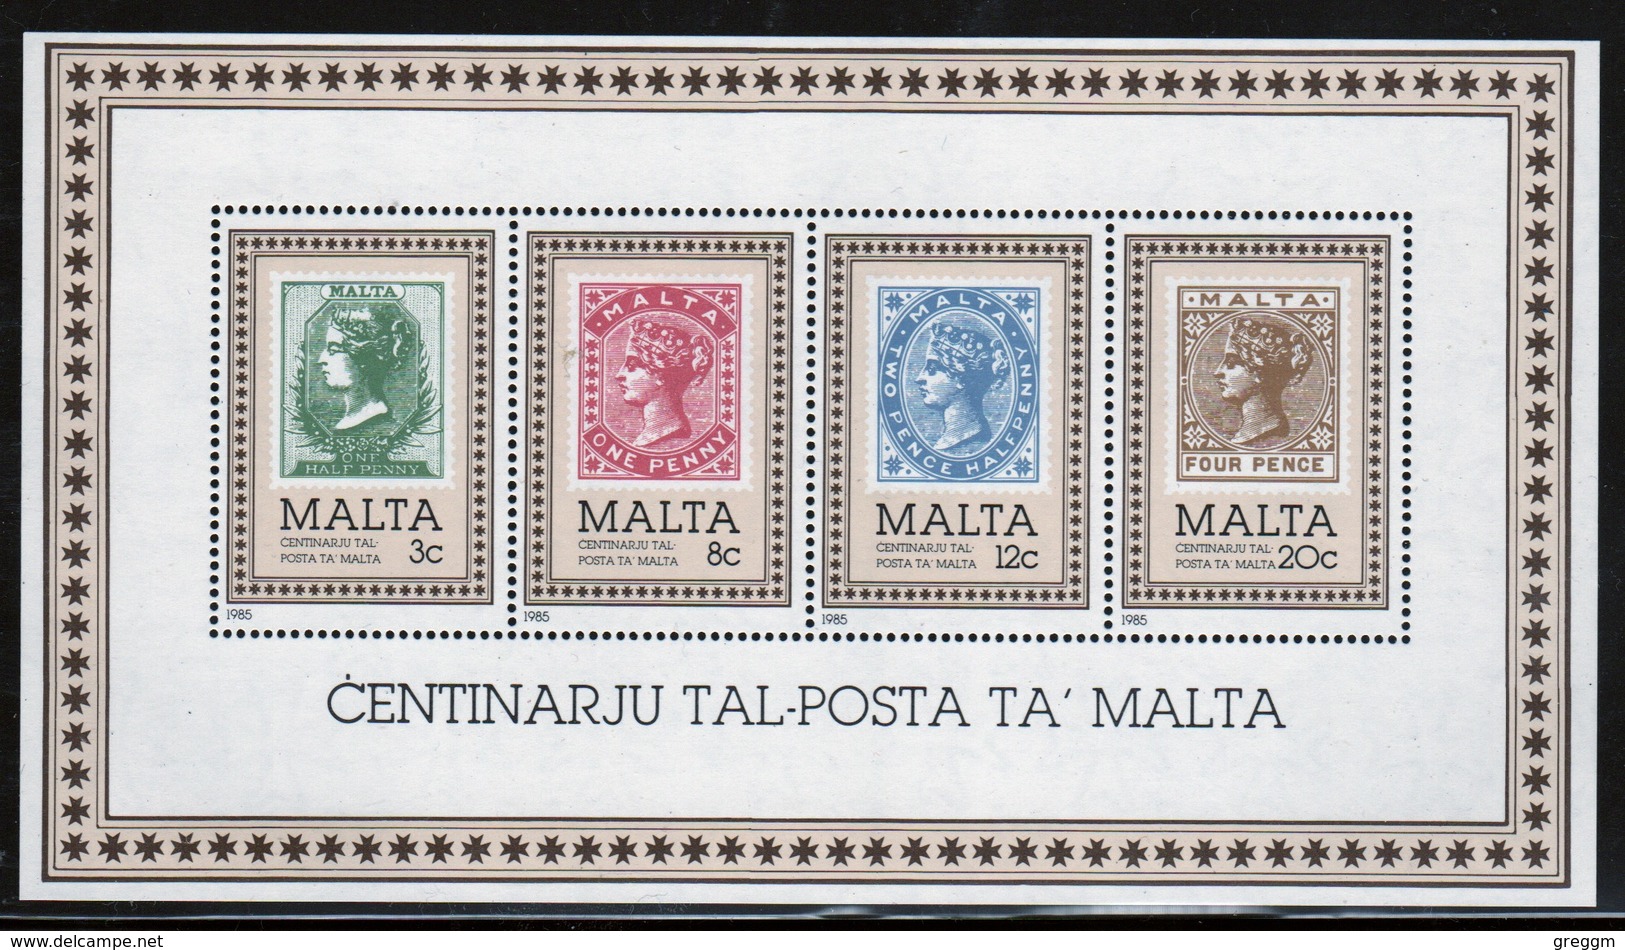 Malta 1985 Mini Sheet To Celebrate Centenary Of Malta Post Office In Unmounted Mint. - Malta